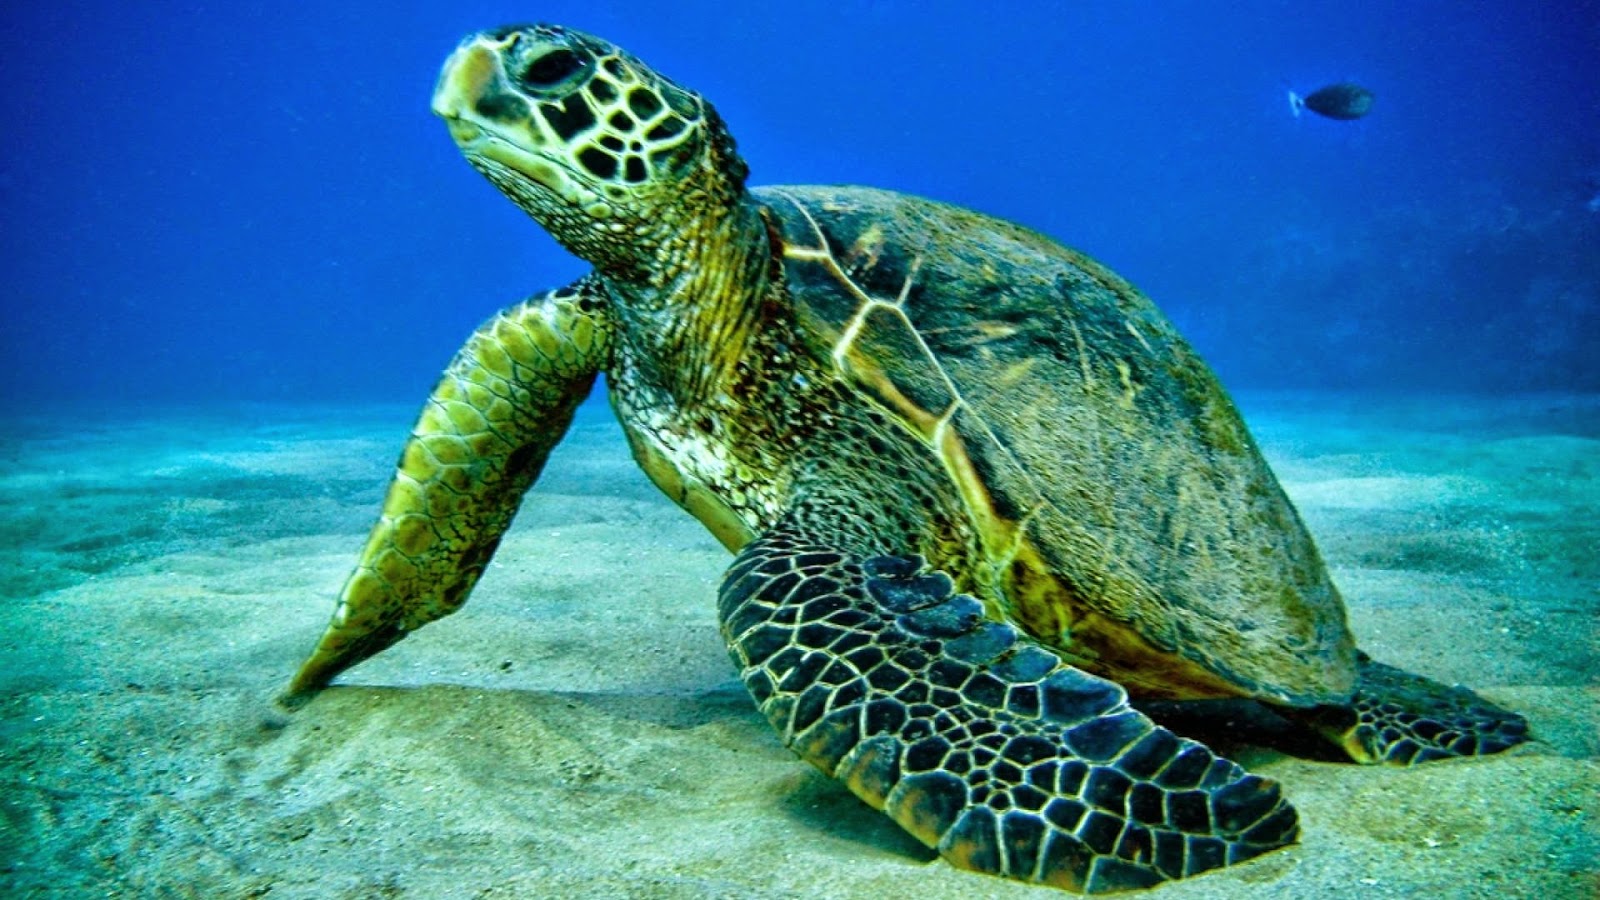 carta da parati tartaruga marina,tartaruga di mare,tartaruga di mare,tartaruga marina ridley verde oliva,tartaruga verde,tartaruga